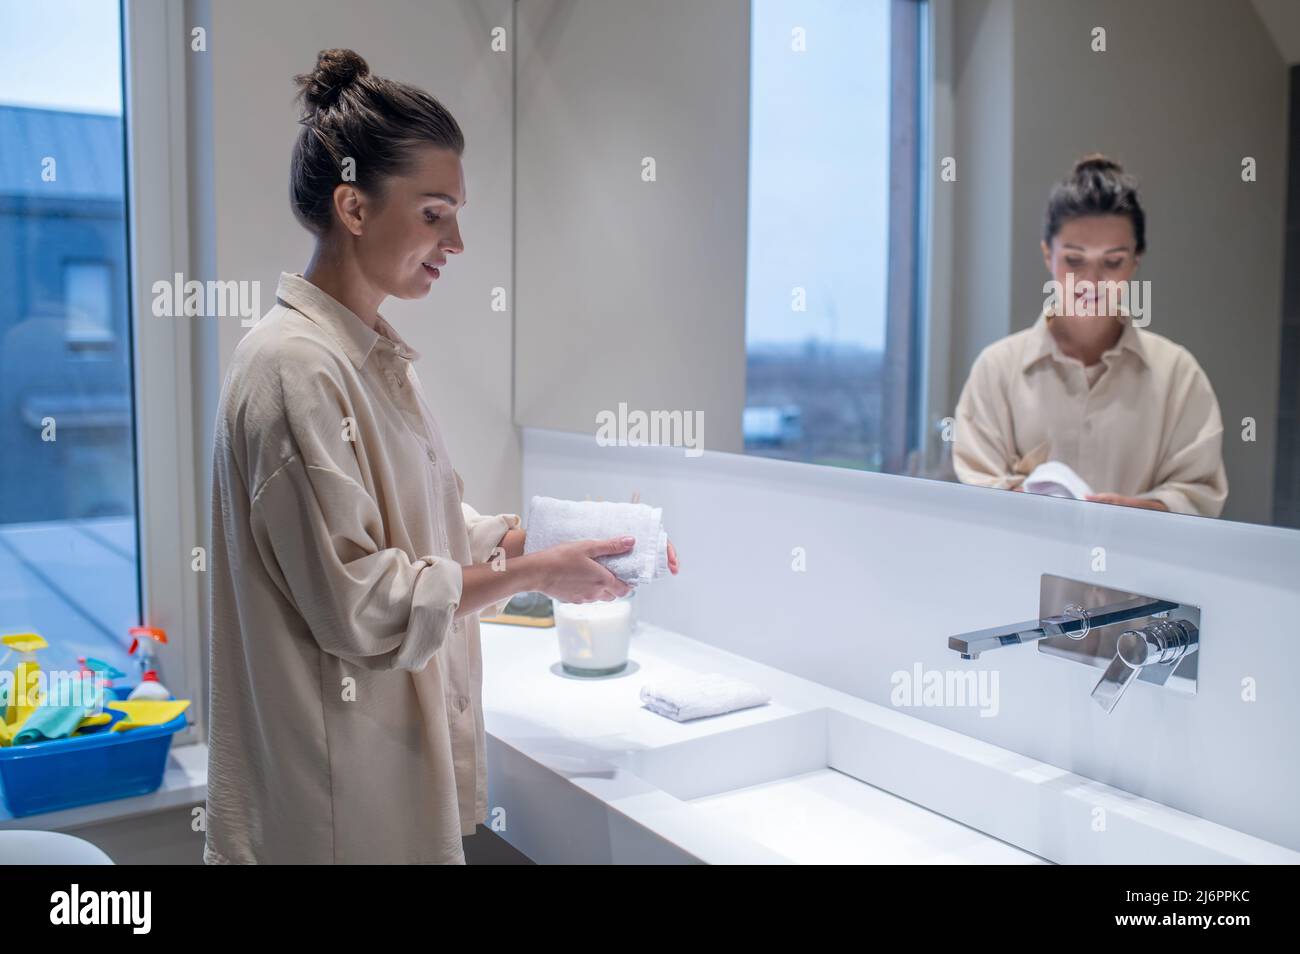 Jeune femme dans la salle de bains faisant un peu de nettoyage Banque D'Images